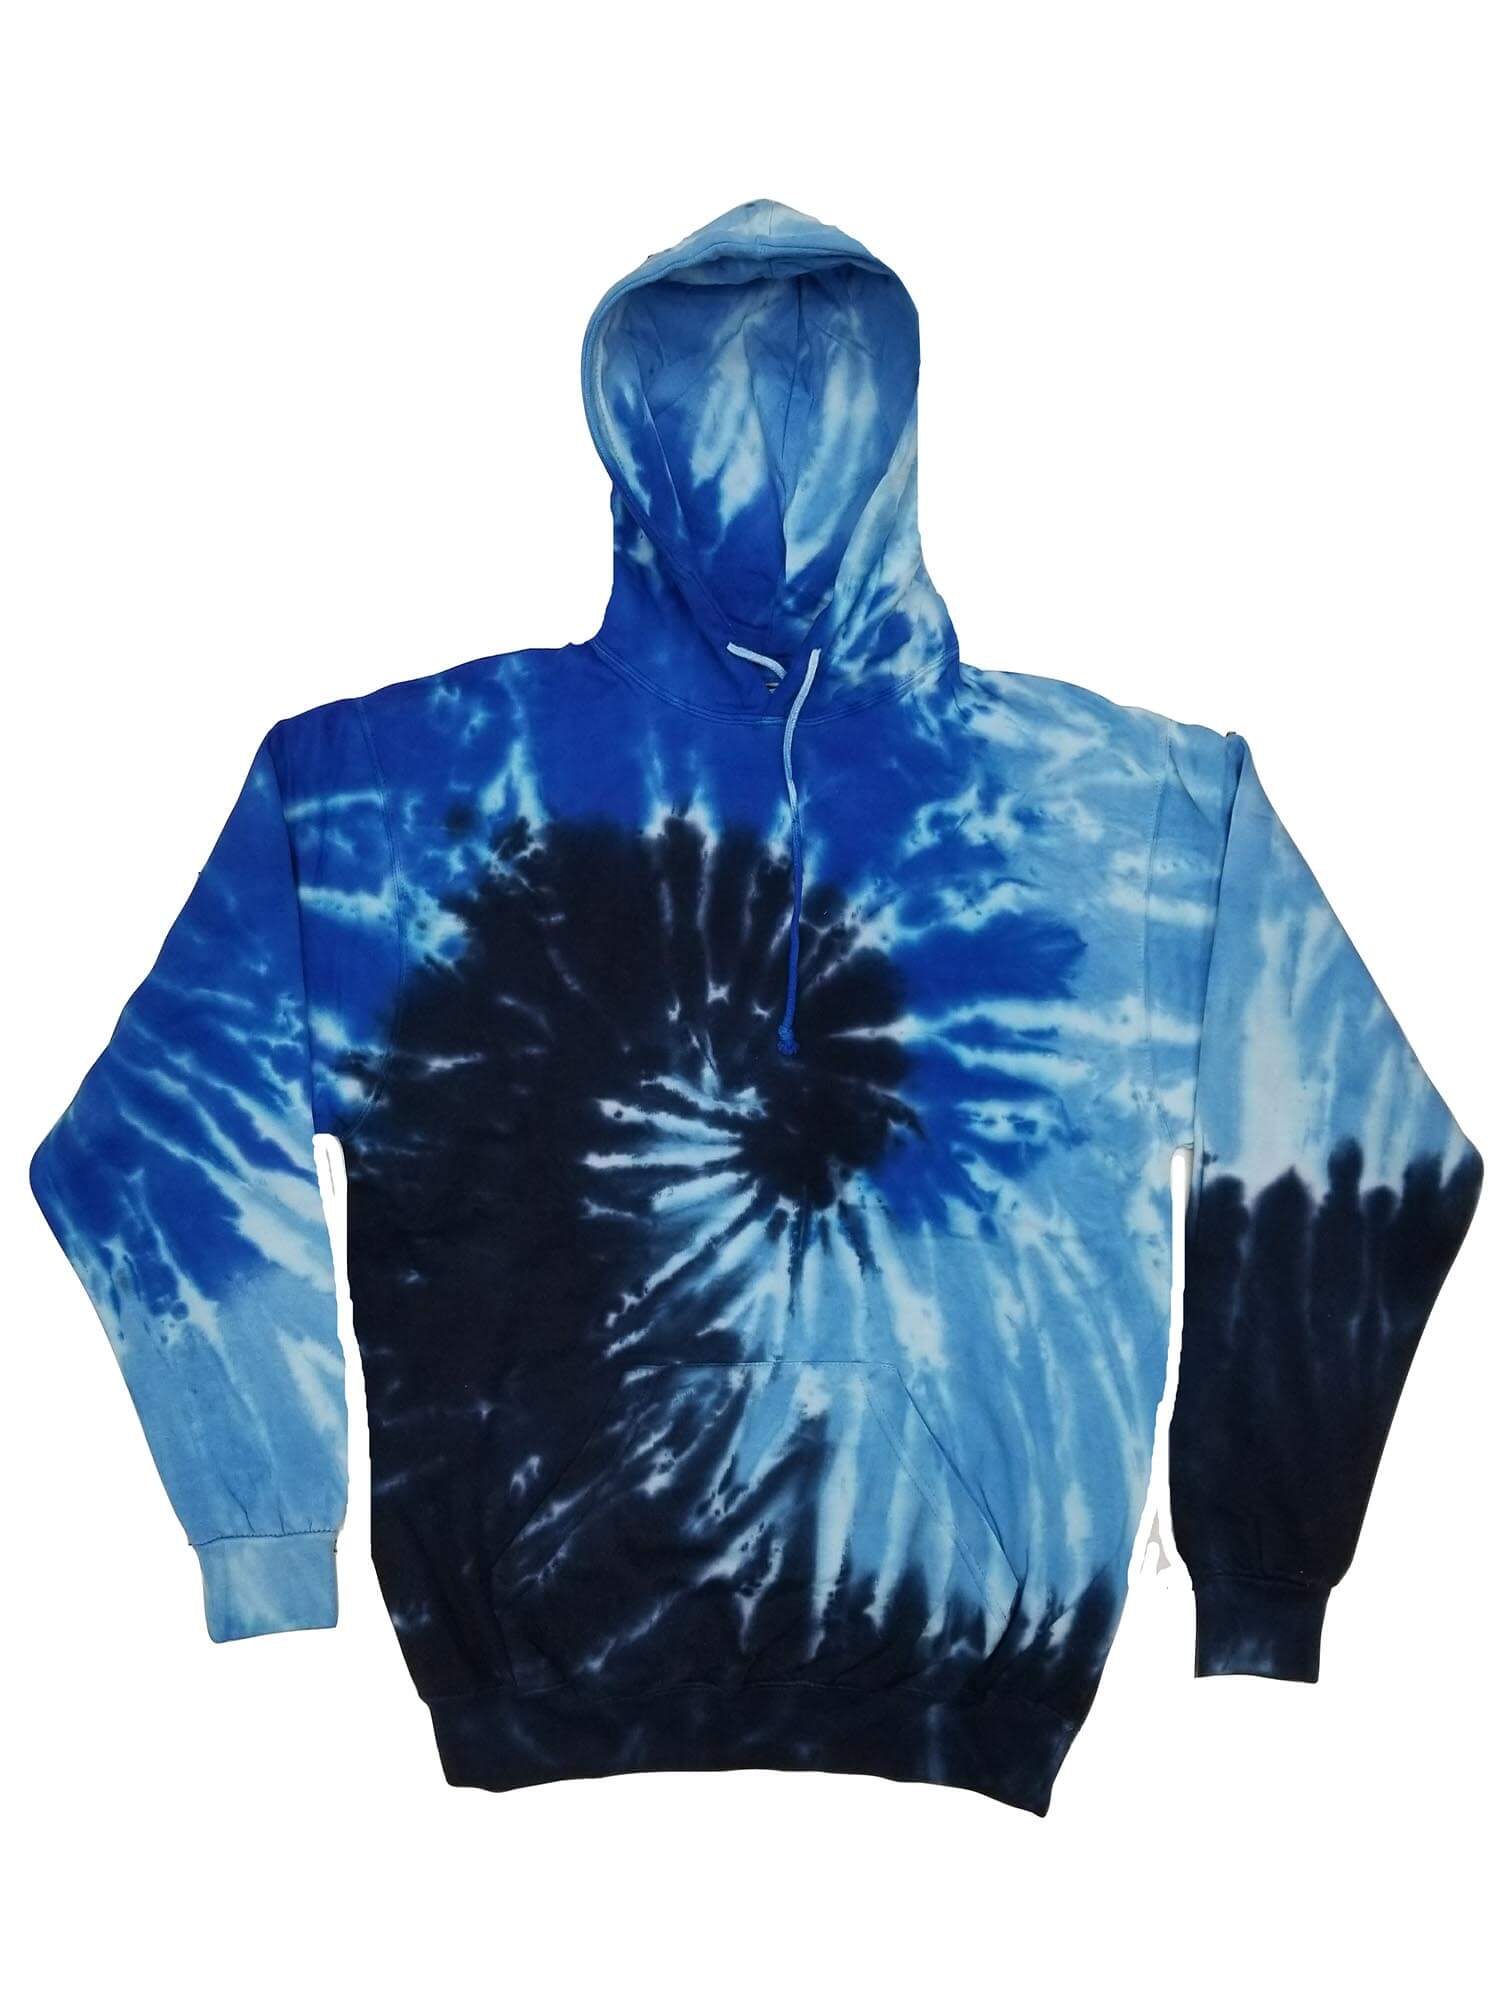 Blue Ocean Tie Dye Hoodies Sweatshirts Adult | Zandy's Bargains